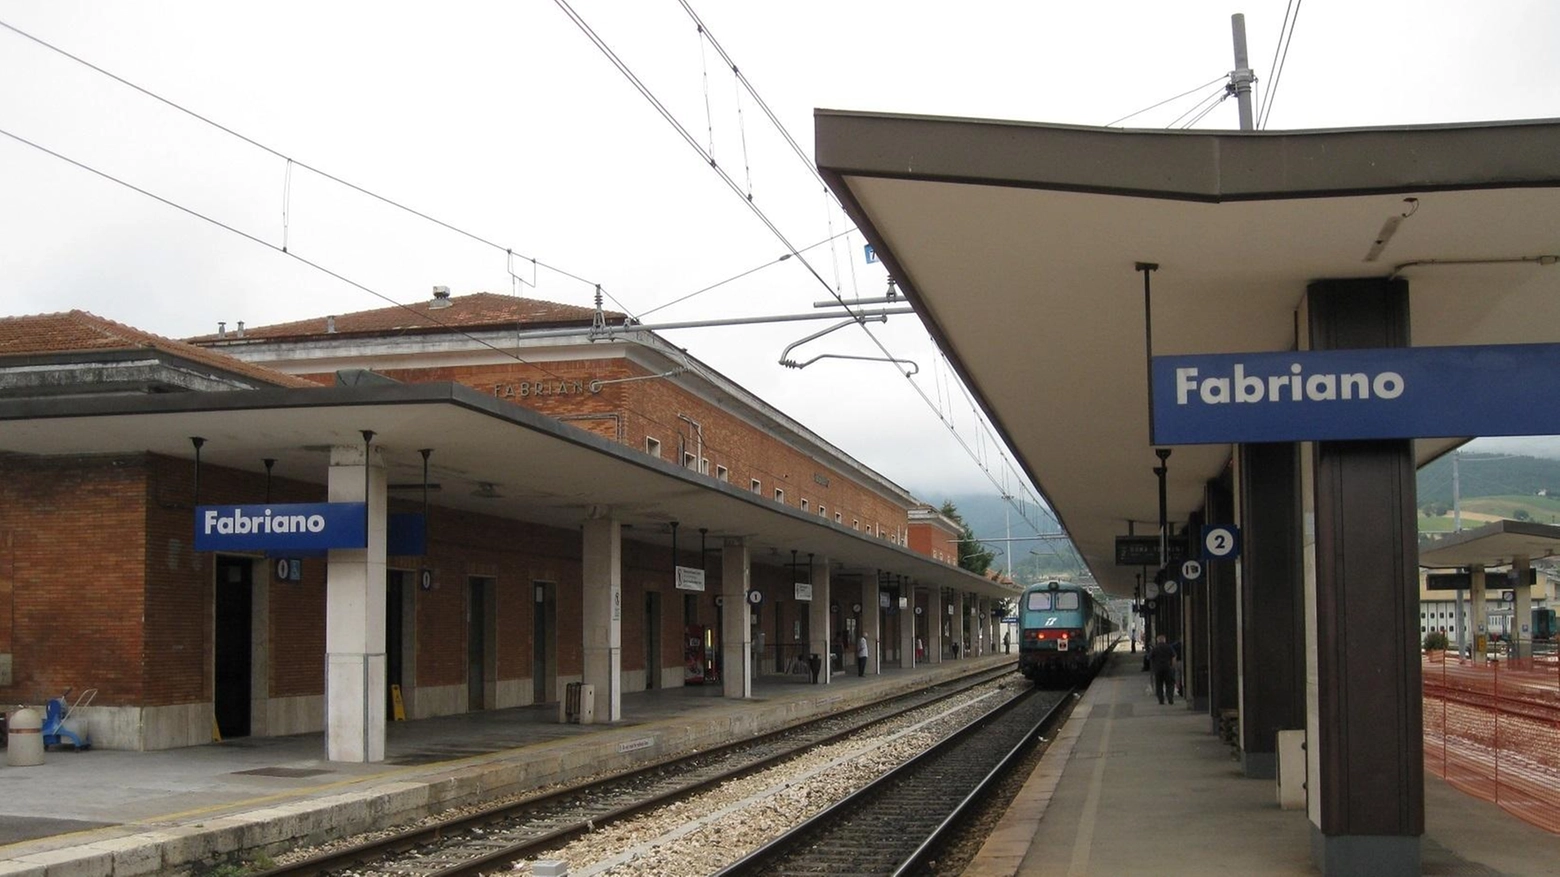 Lavori: tre mesi di stop ai treni ad Albacina